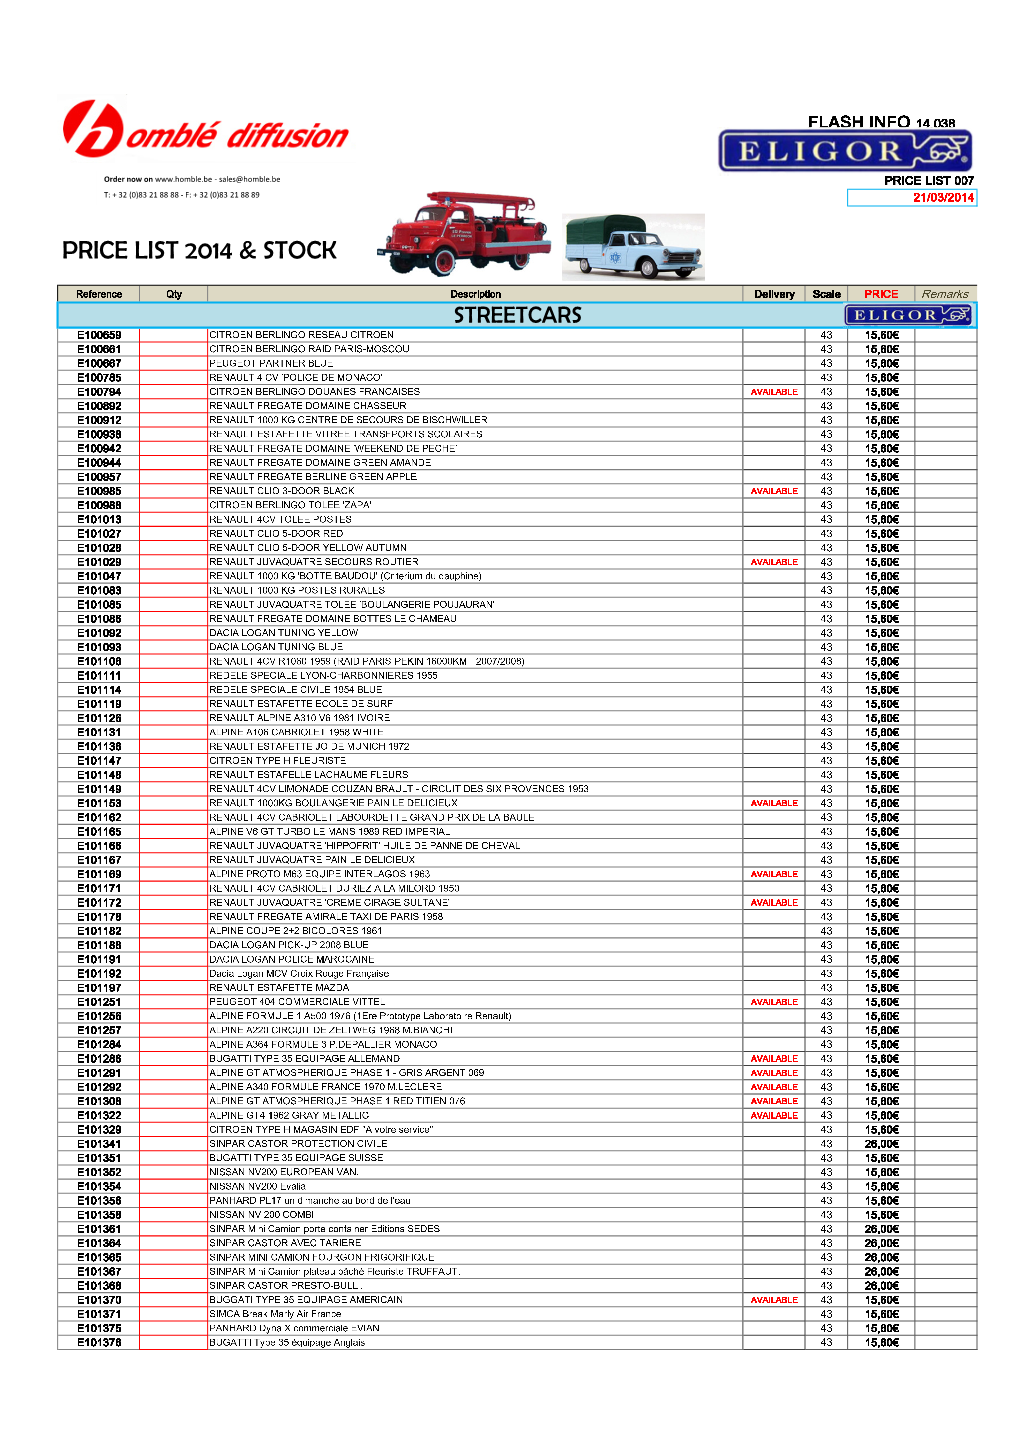 Price List 2014 & Stock